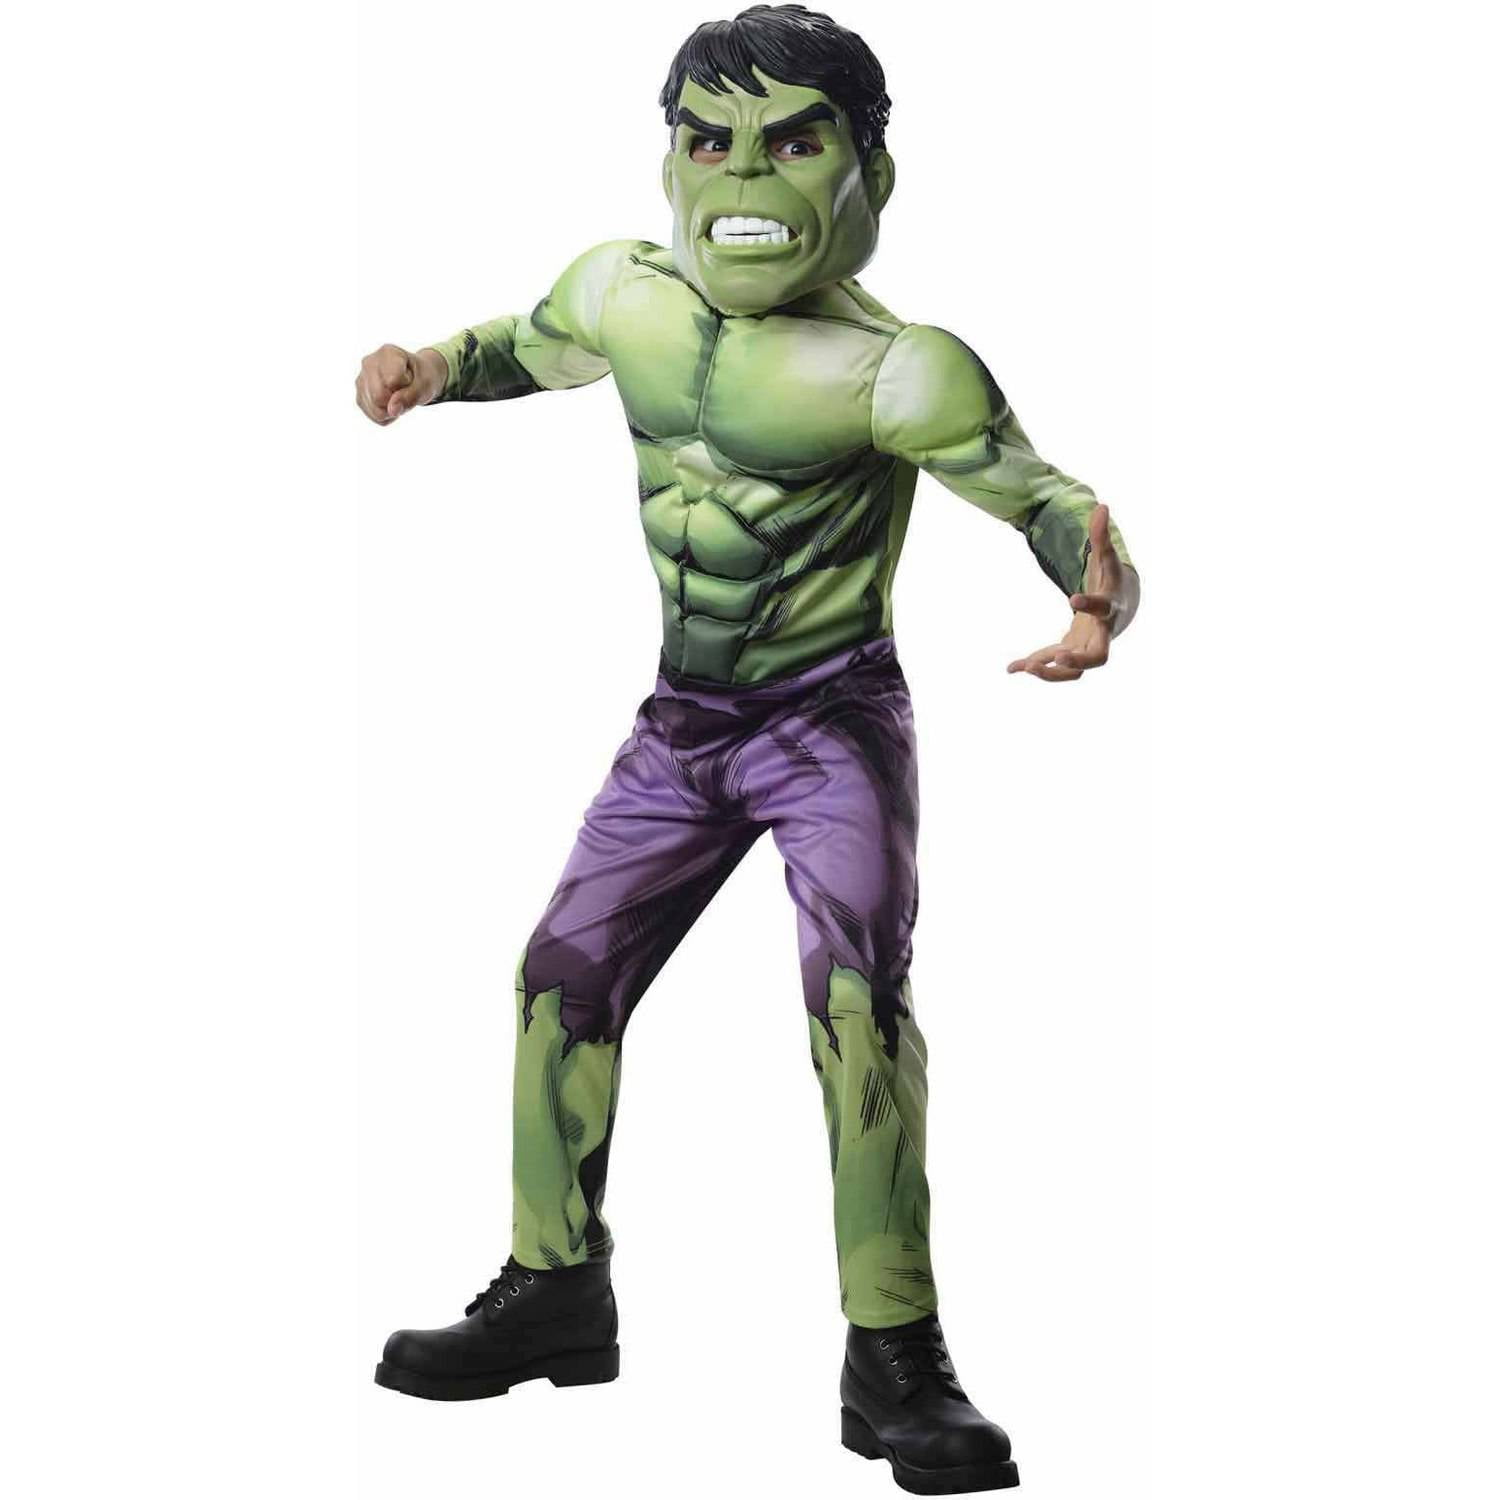 Hulk Deluxe Muscle Avengers Endgame Marvel Superhero Dress Up Boys Costume 